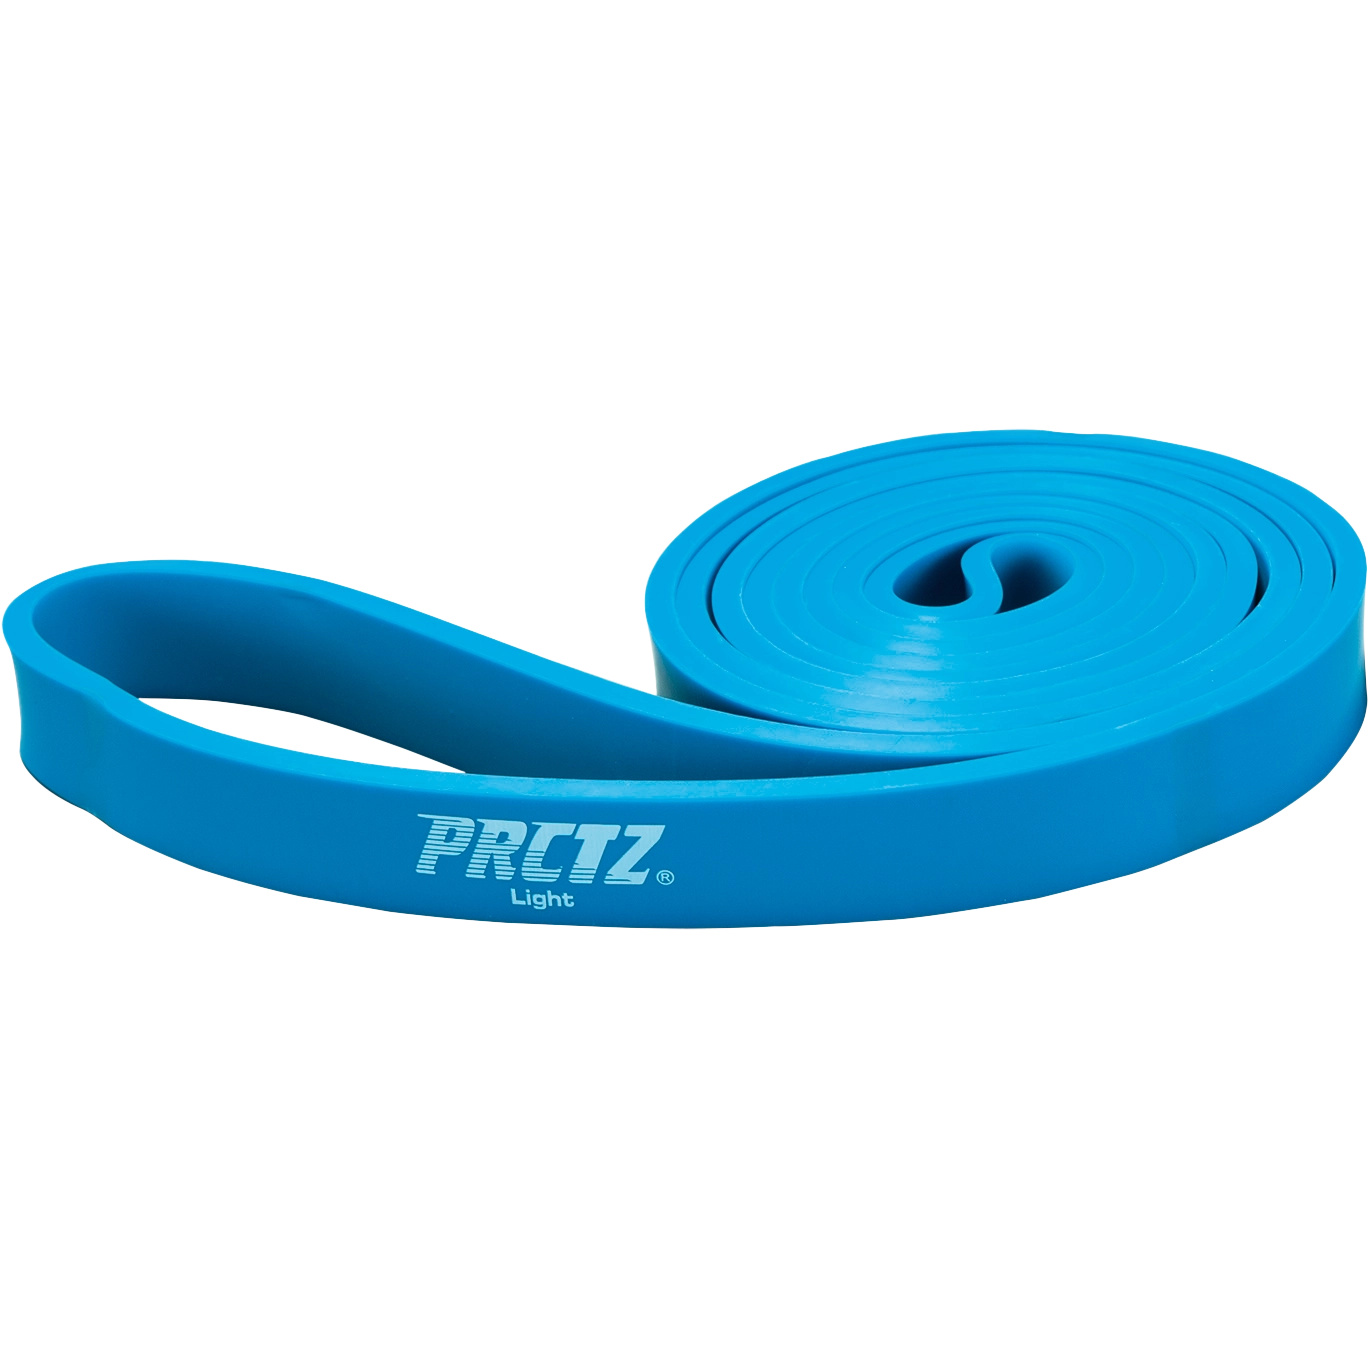 Силовая лента PRCTZ Power Band Light слабое сопротивление